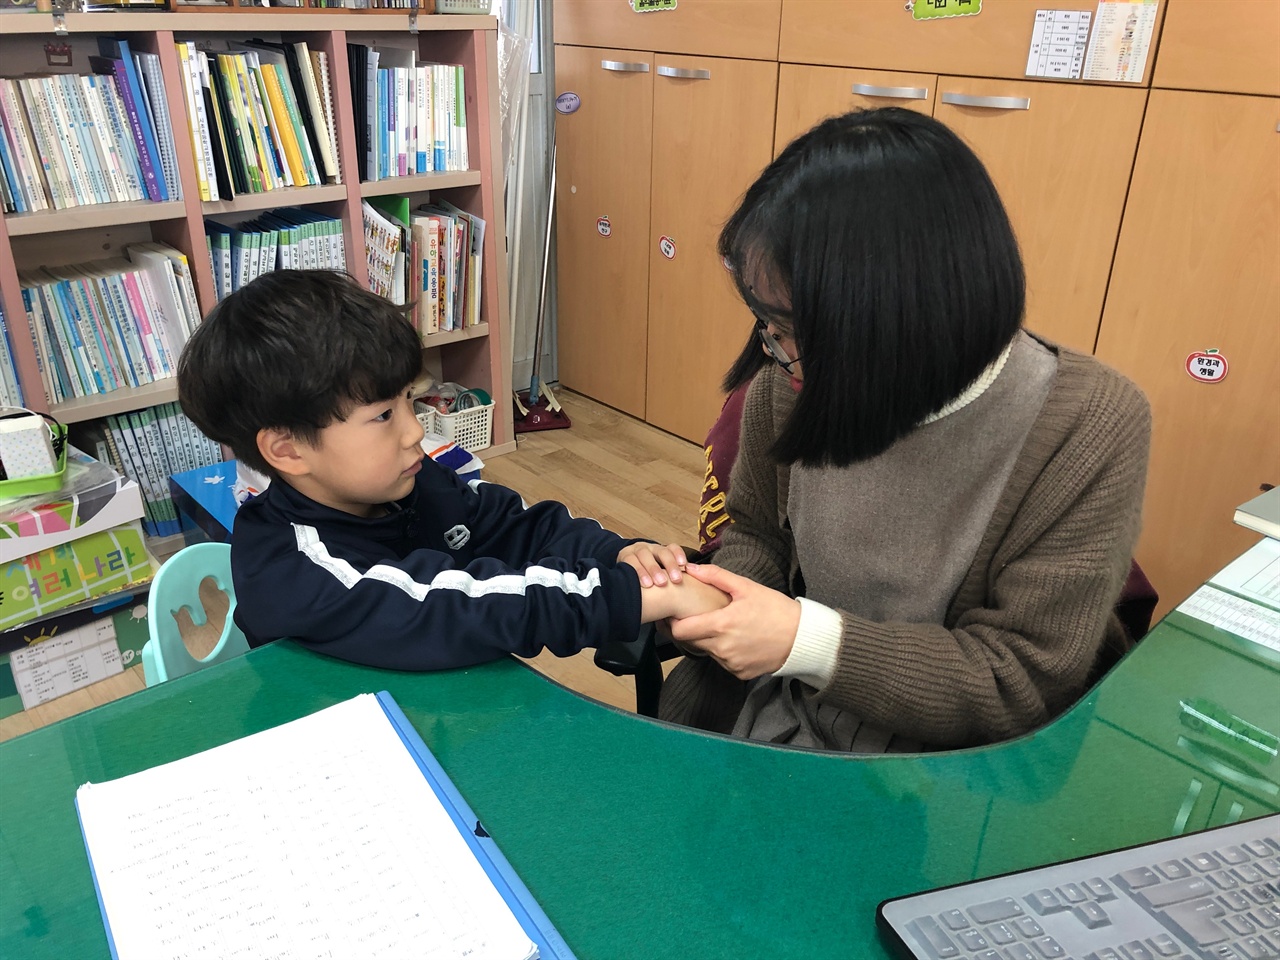 충남 서천의 시초초등학교병설유치원(교장 조성업) 권소현 교사는 유아의 성장과 발달을 체계적으로 측정하고 평가하기 위해 아이들과 특별한 대화 시간을 갖고 있다.